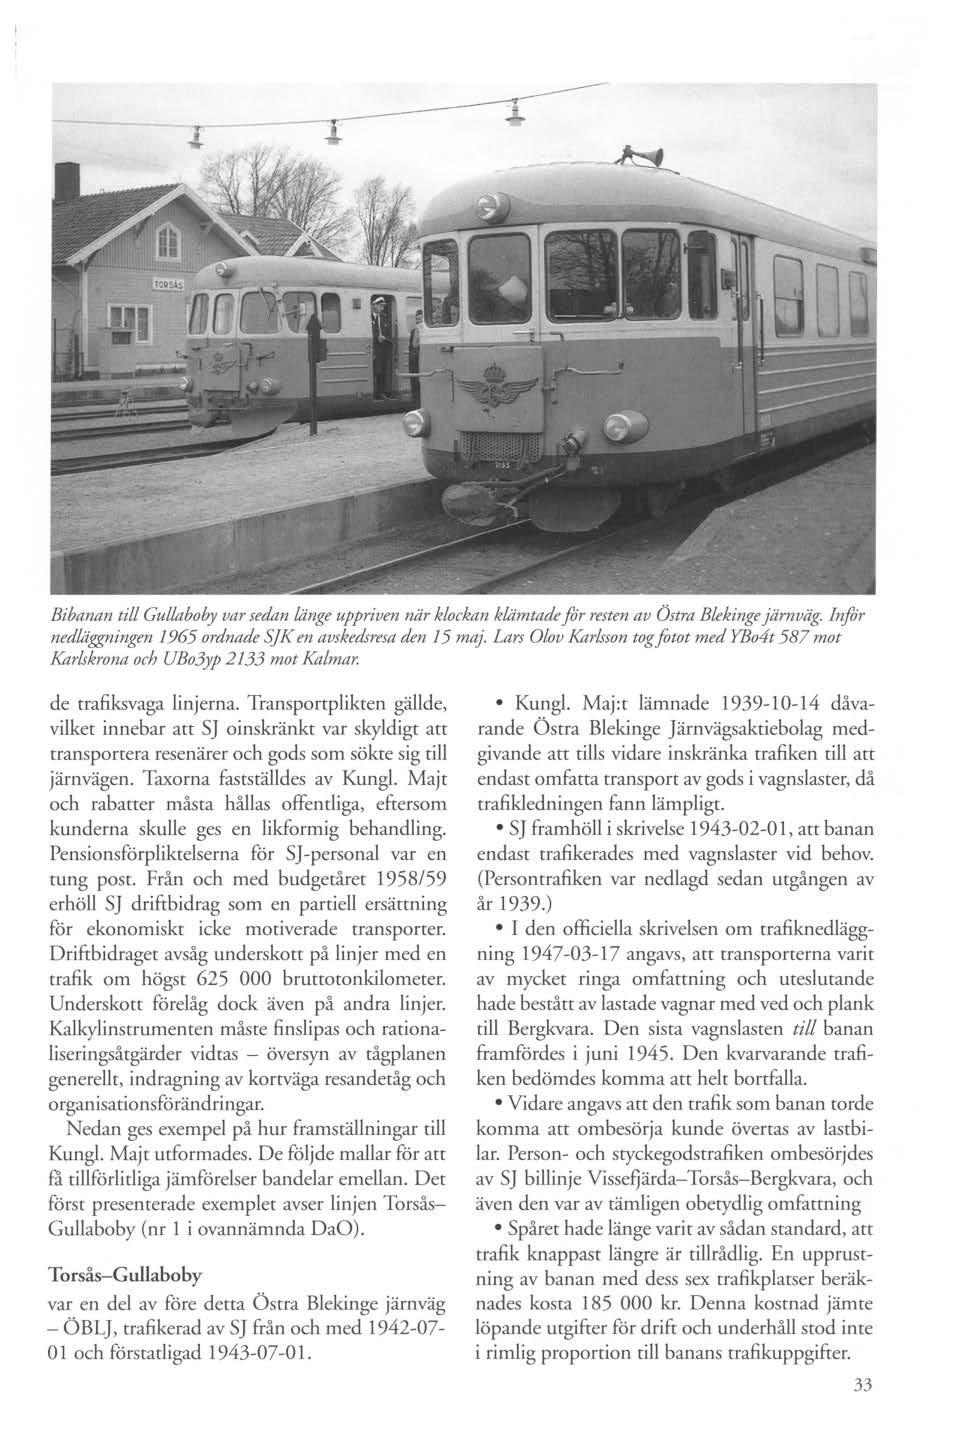 ----- Bibanan till Gullaboby var sedan länge uppriven när klockan klämtade for resten av Östra Blekinge järnväg. Infor nedläggrzingen 1965 ordnade SJK en avskedsresa den 15 maj.